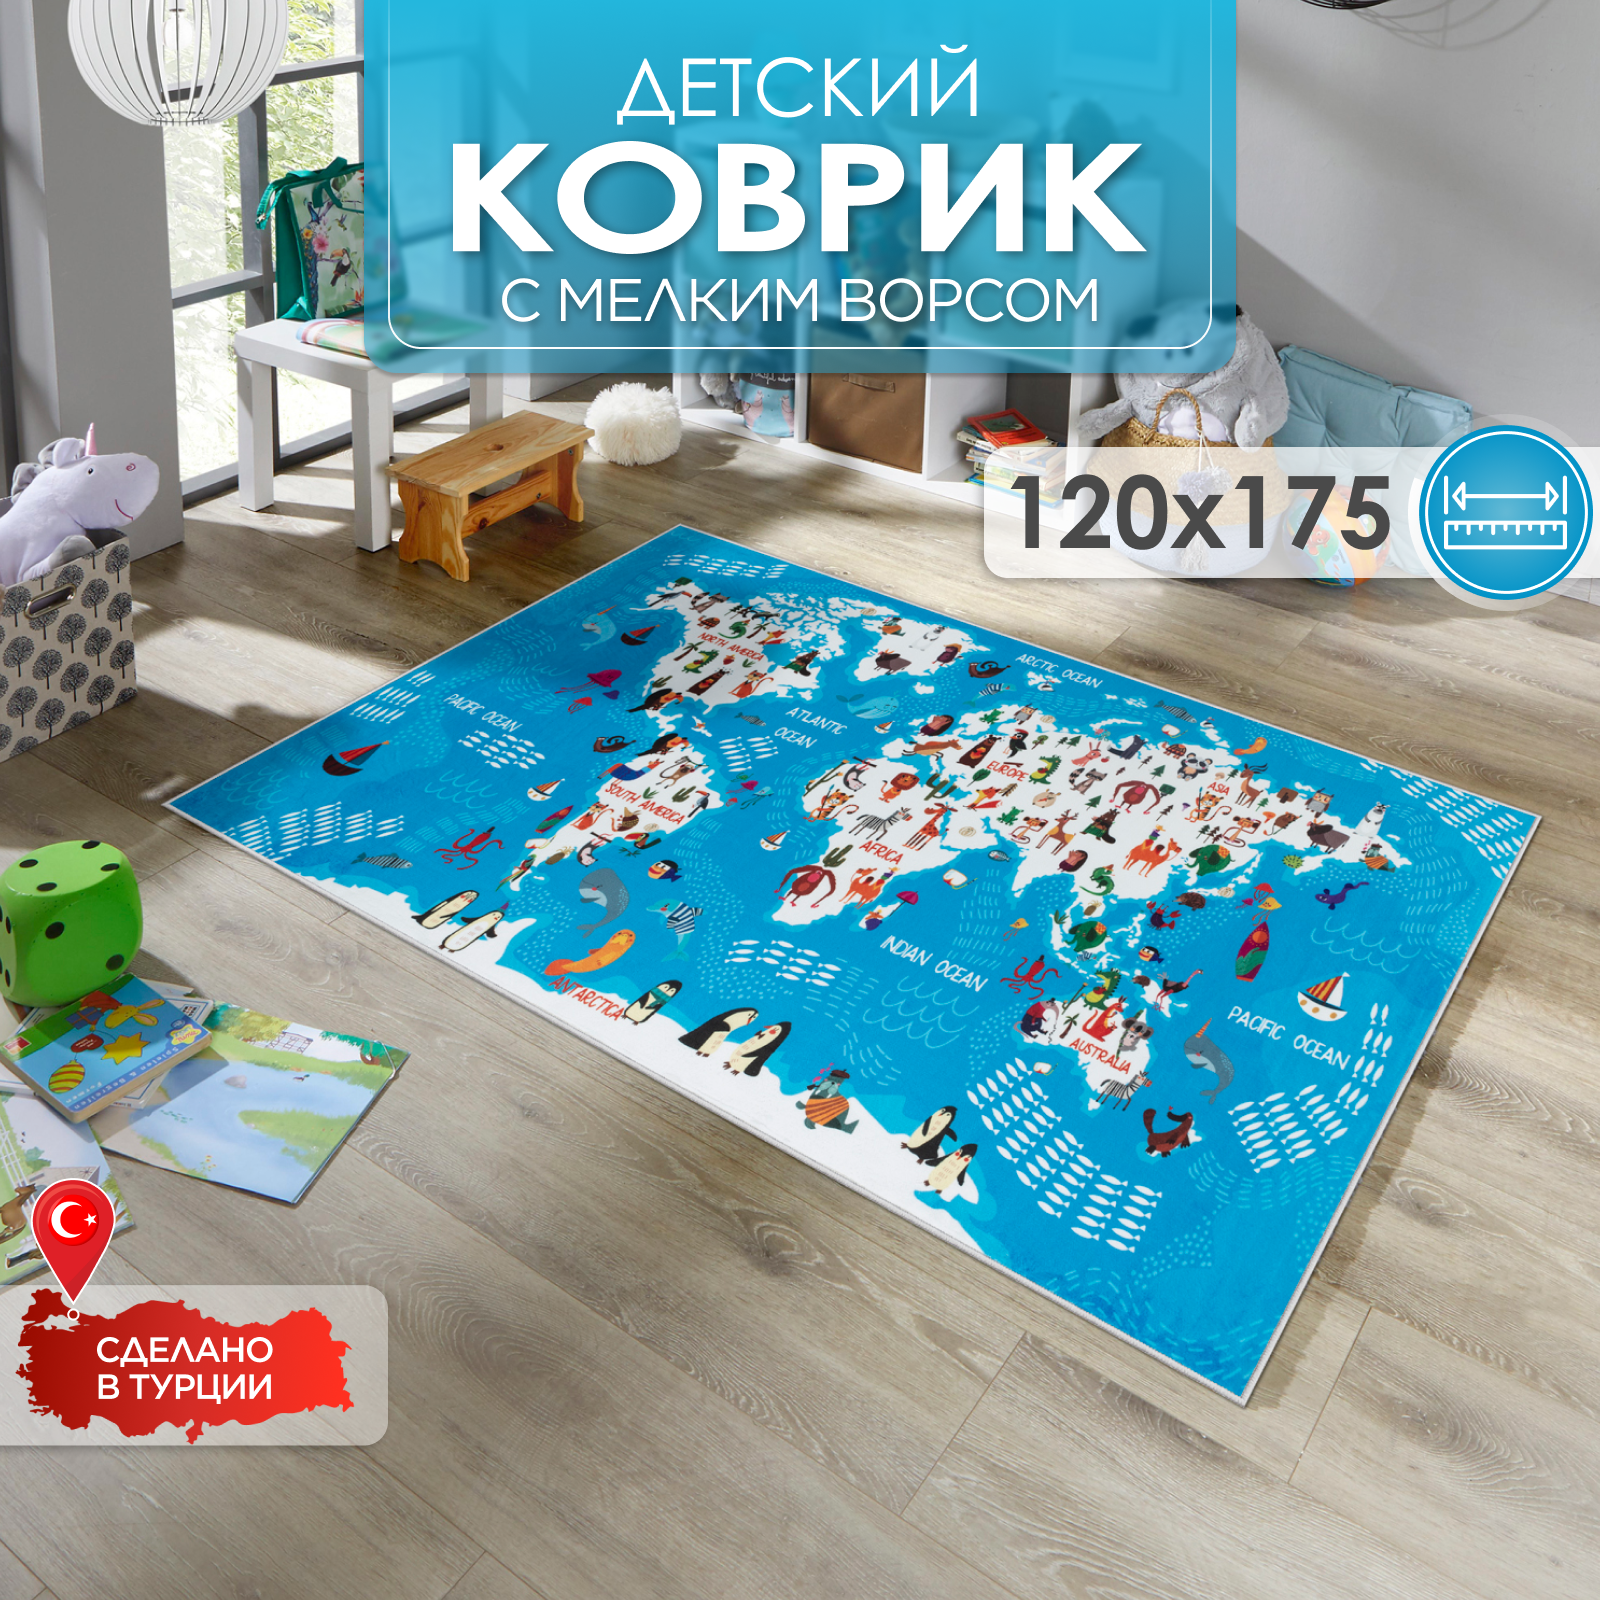 Ковер комнатный детский KOVRIKANA карта мира развивающий голубой океан 120см на 175см - фото 1